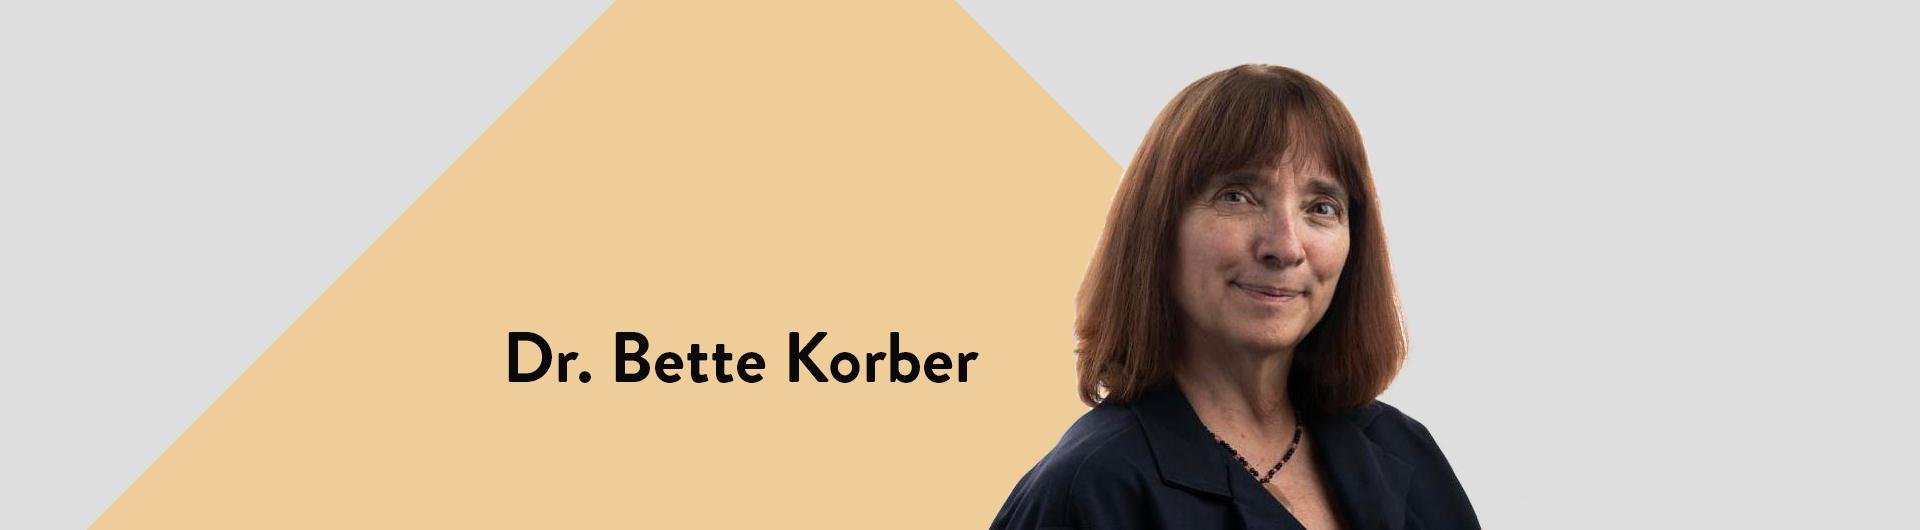 Dr. Bette Korber